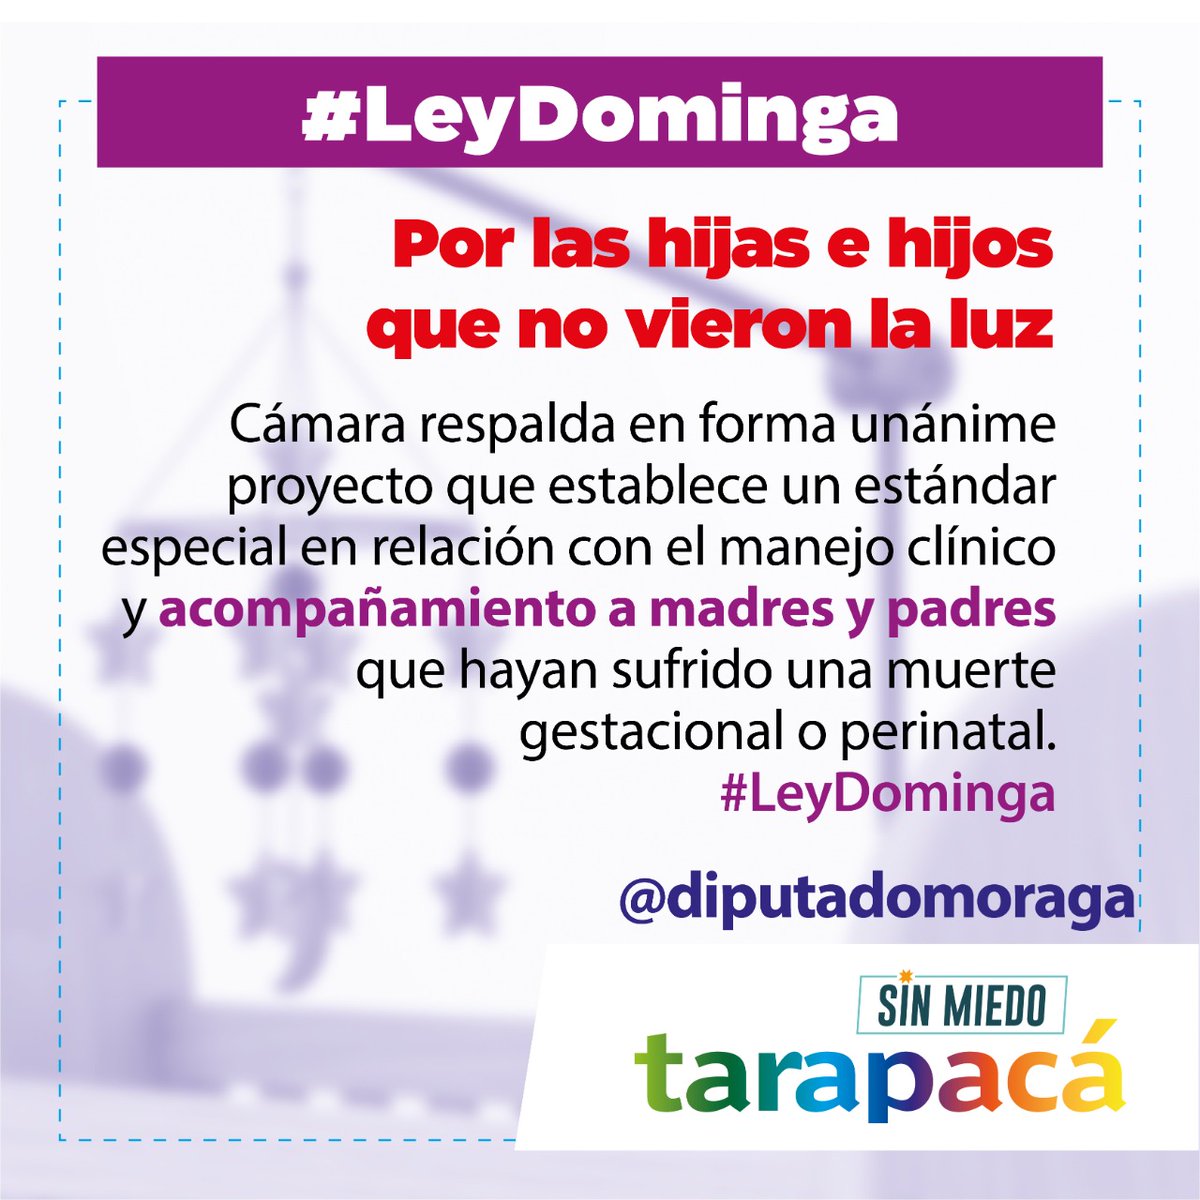 Hoy aprobamos y despachamos a Ley la #LeyDominga 
-
#Tarapaca #Iquique #AltoHospicio ##Huara #Camiña #PozoAlmonte #Pica #Colchane